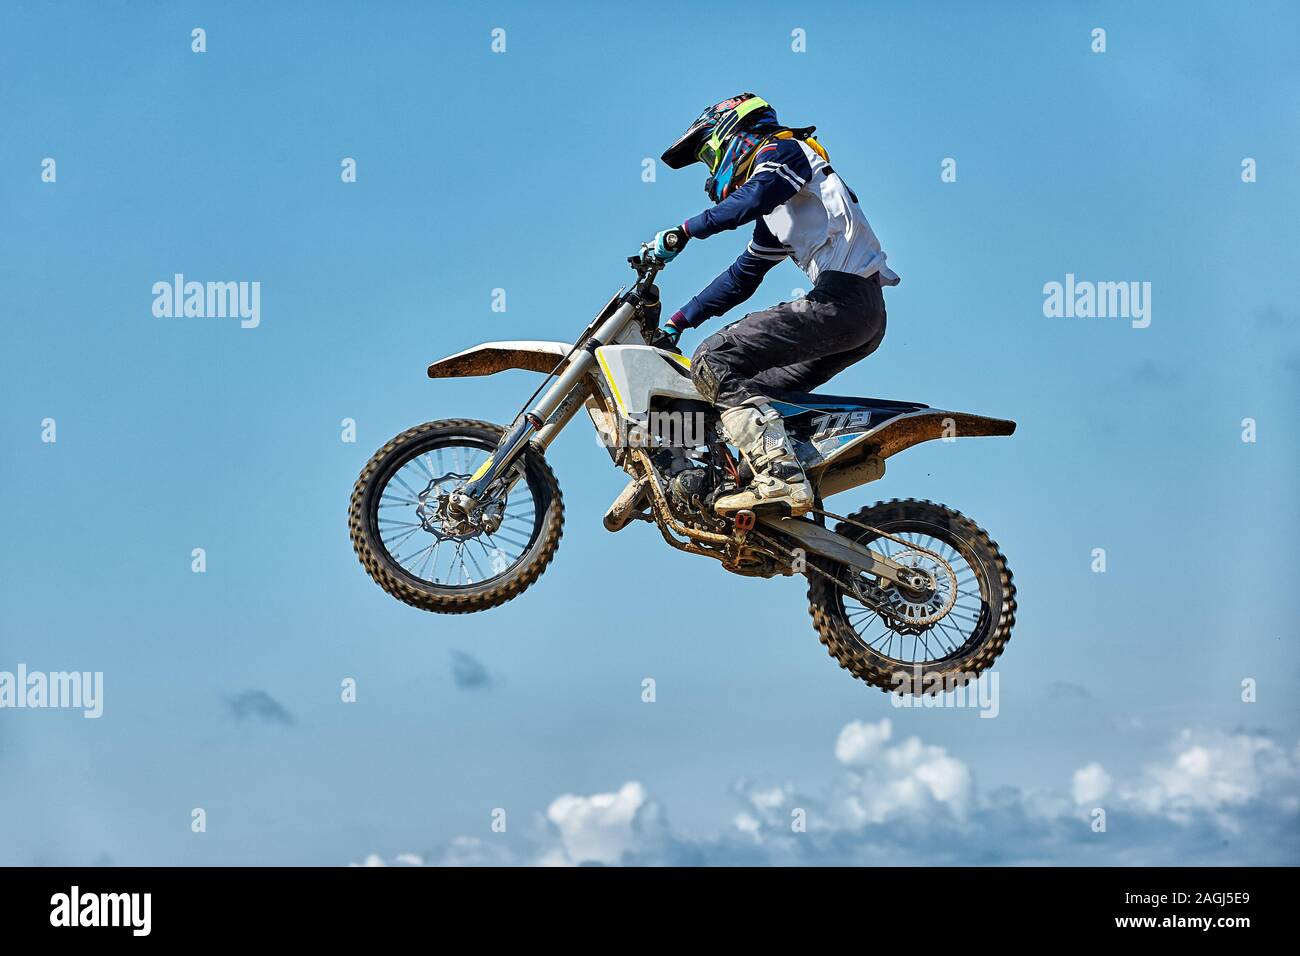 Extreme Sports, moto saute. Motocycliste effectue un saut extrême contre le  ciel. L'effet de grain de film, de l'éclairage Photo Stock - Alamy